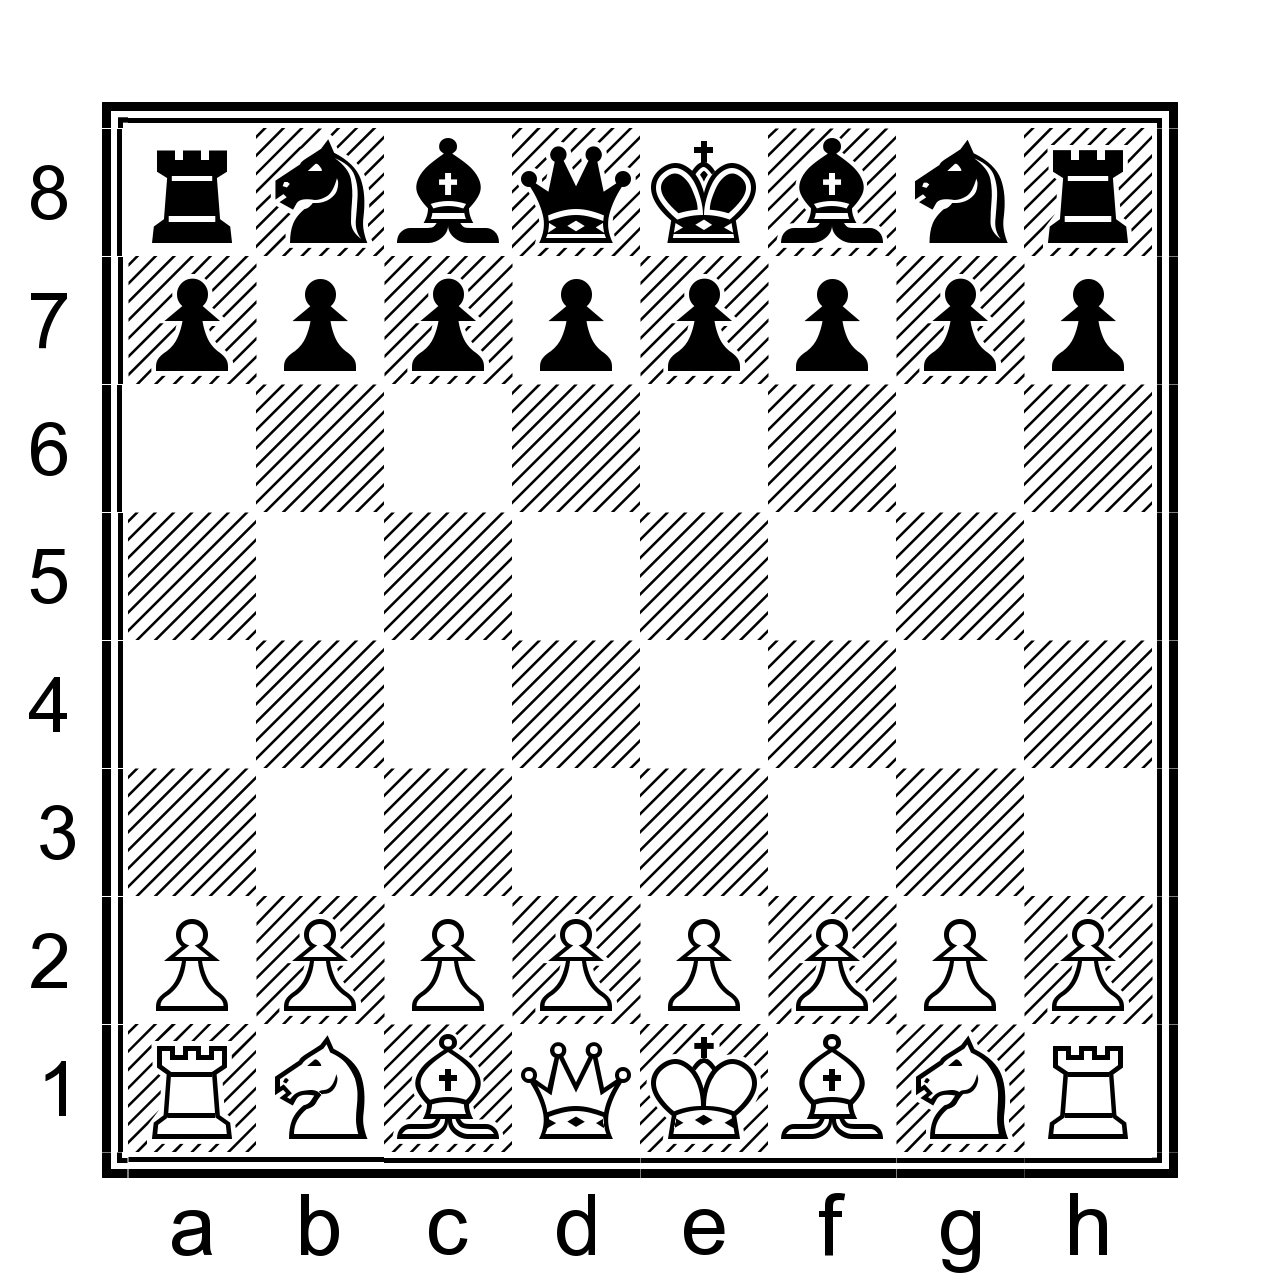 Расстановка шахмат на доске фото с названием фигур